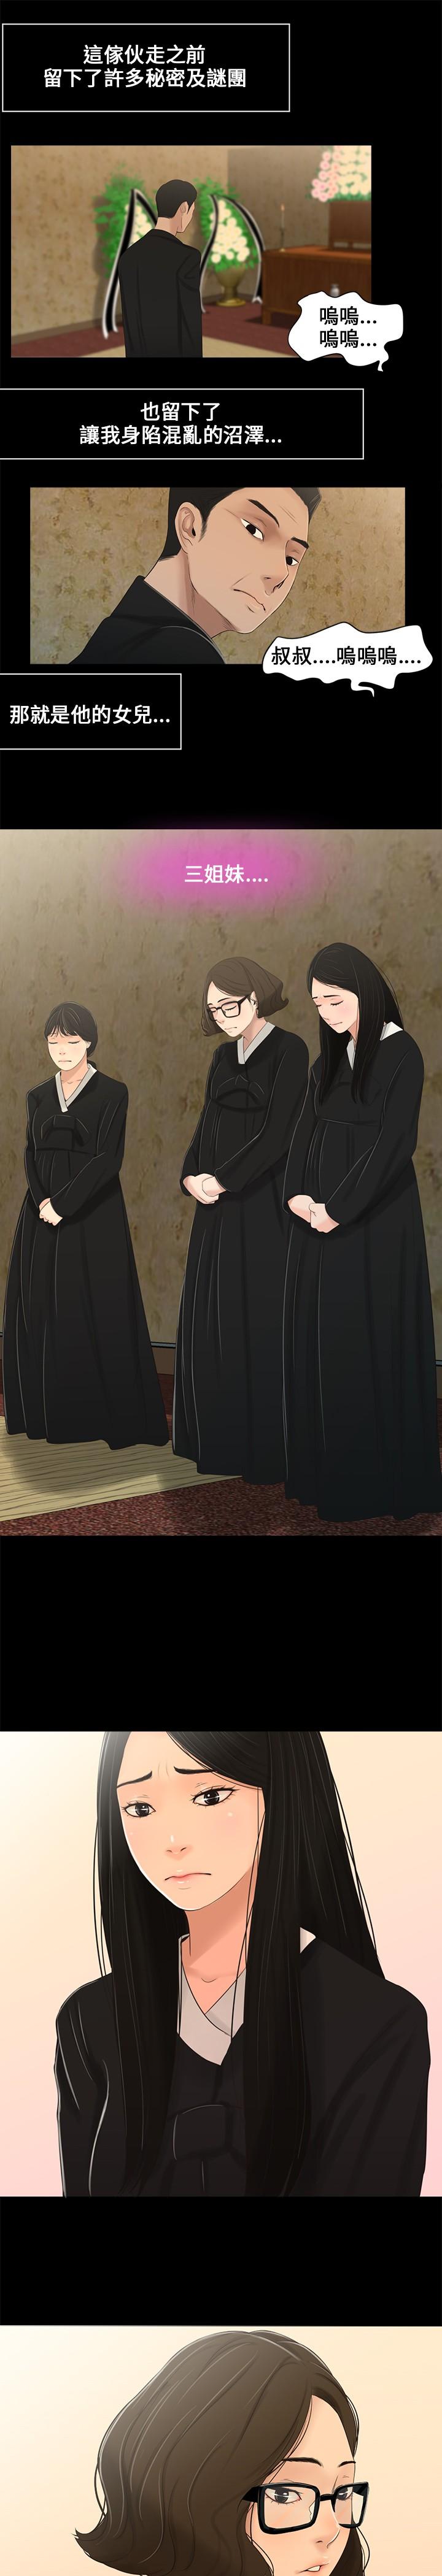 Three sisters 三姐妹ch.1-6 17